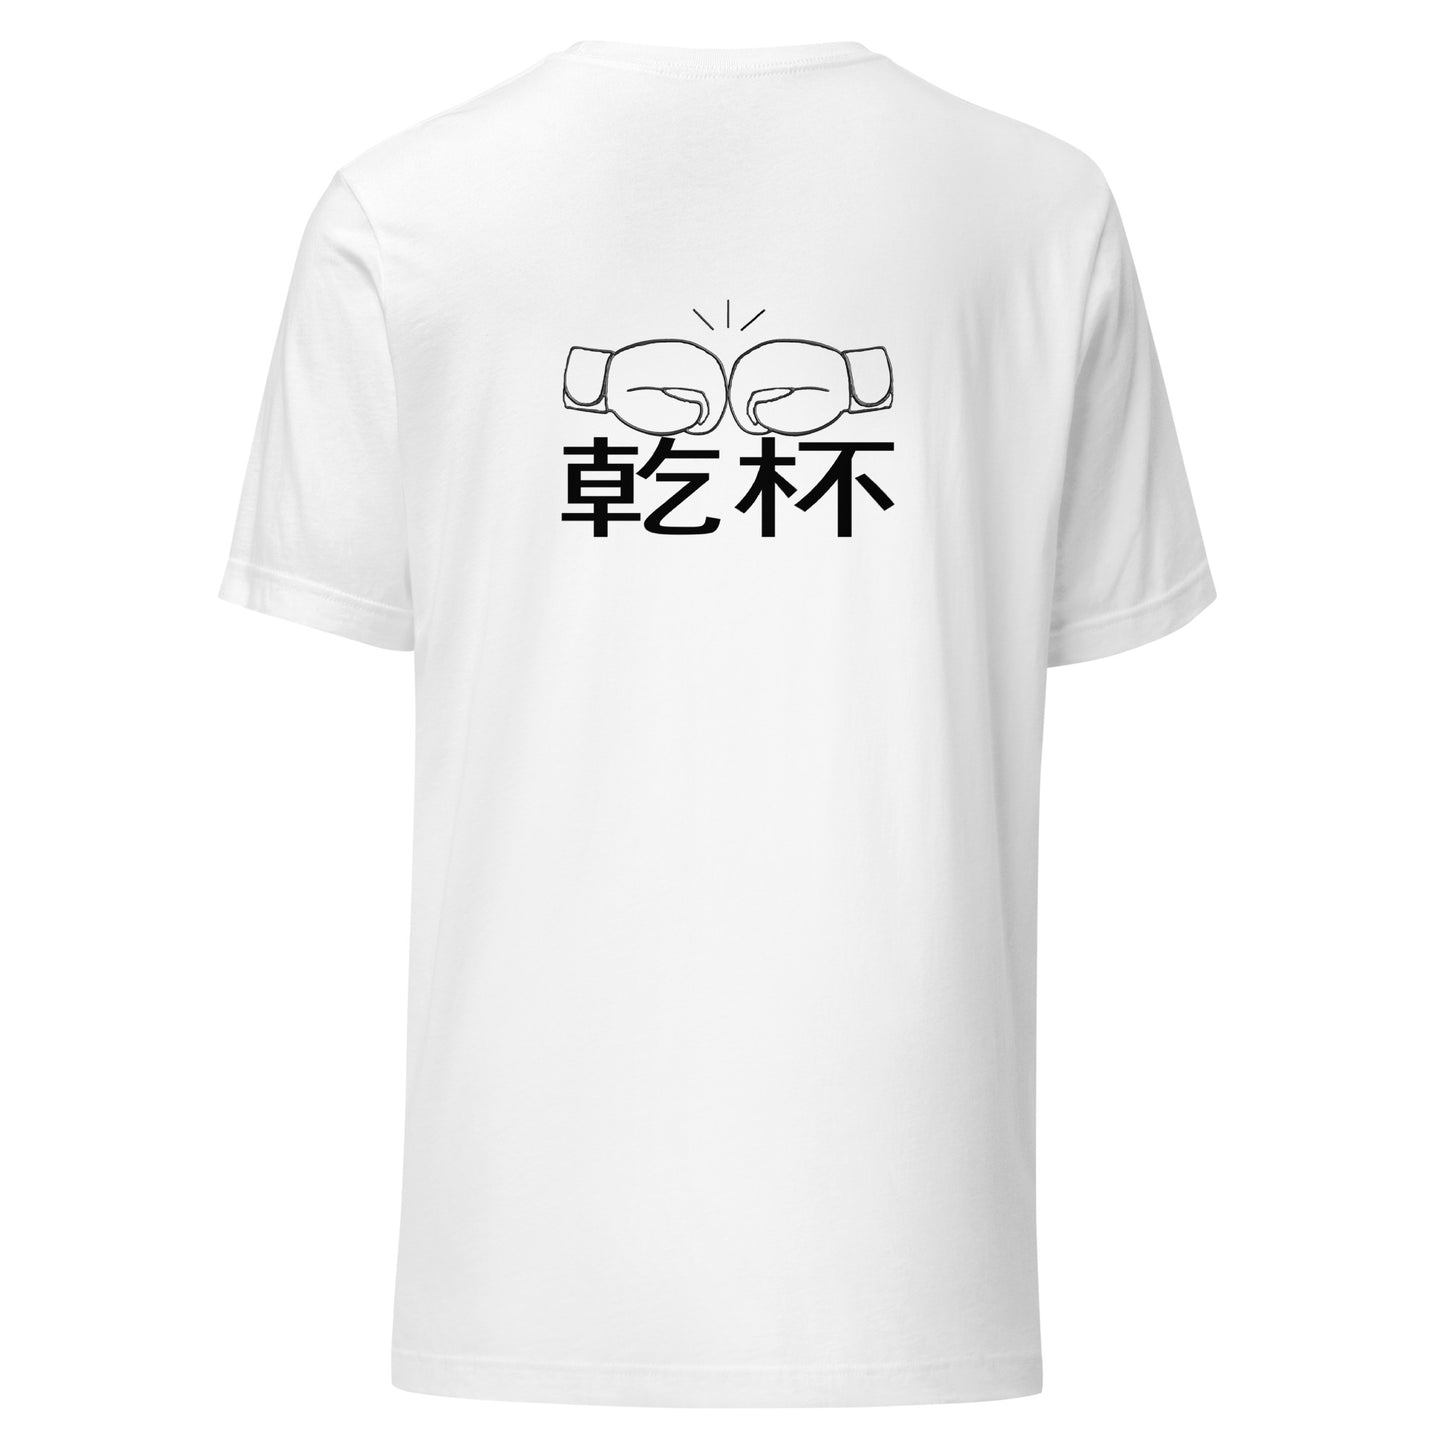 Kampai Chikara Japanese Cheers Unisex t-shirt